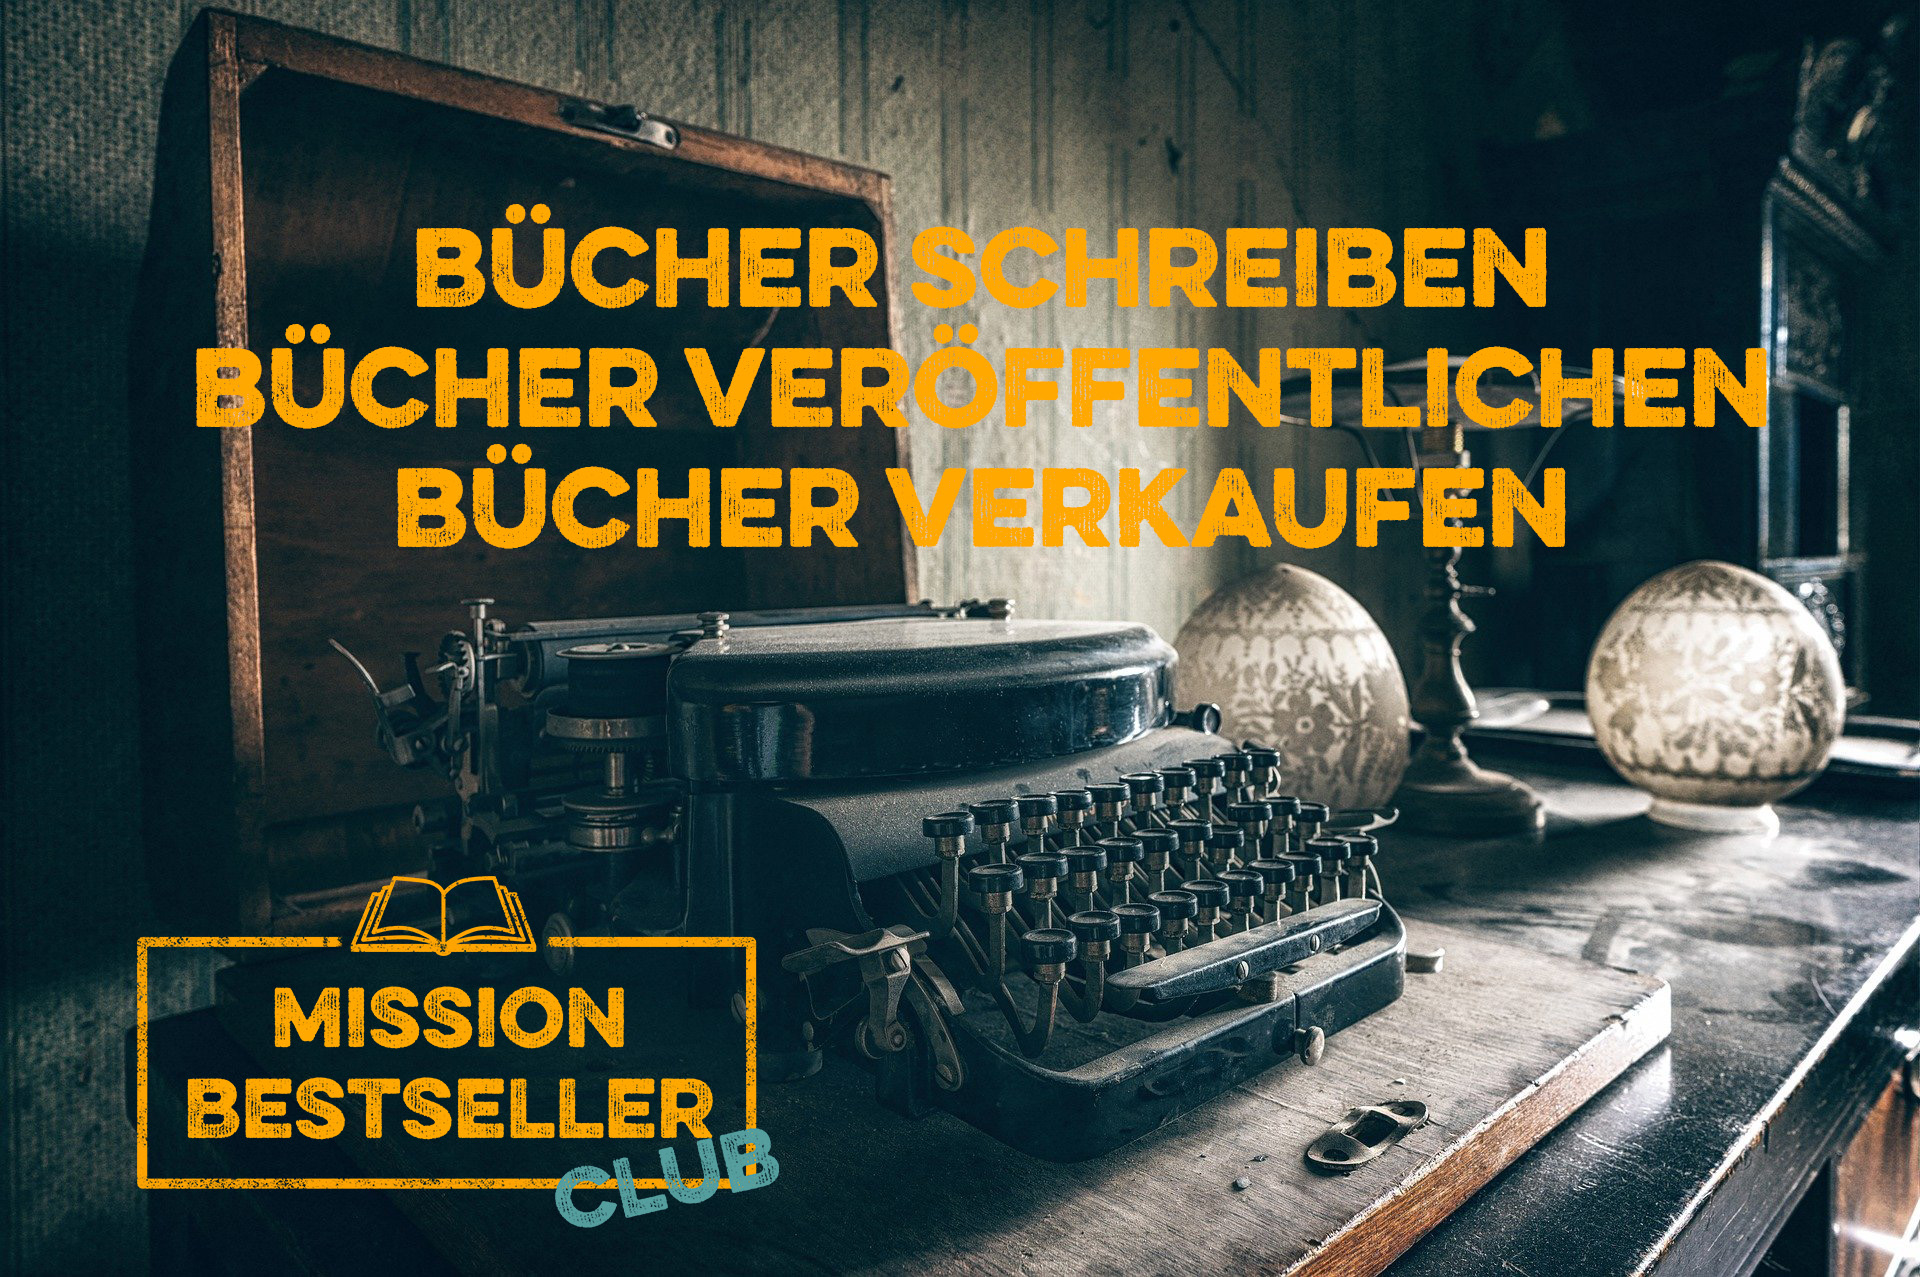 Alte Schreibmaschine auf Schreibtisch mit Lampe - Mission Bestseller Club - Bücher schreiben, veröffentlichen, verkaufen